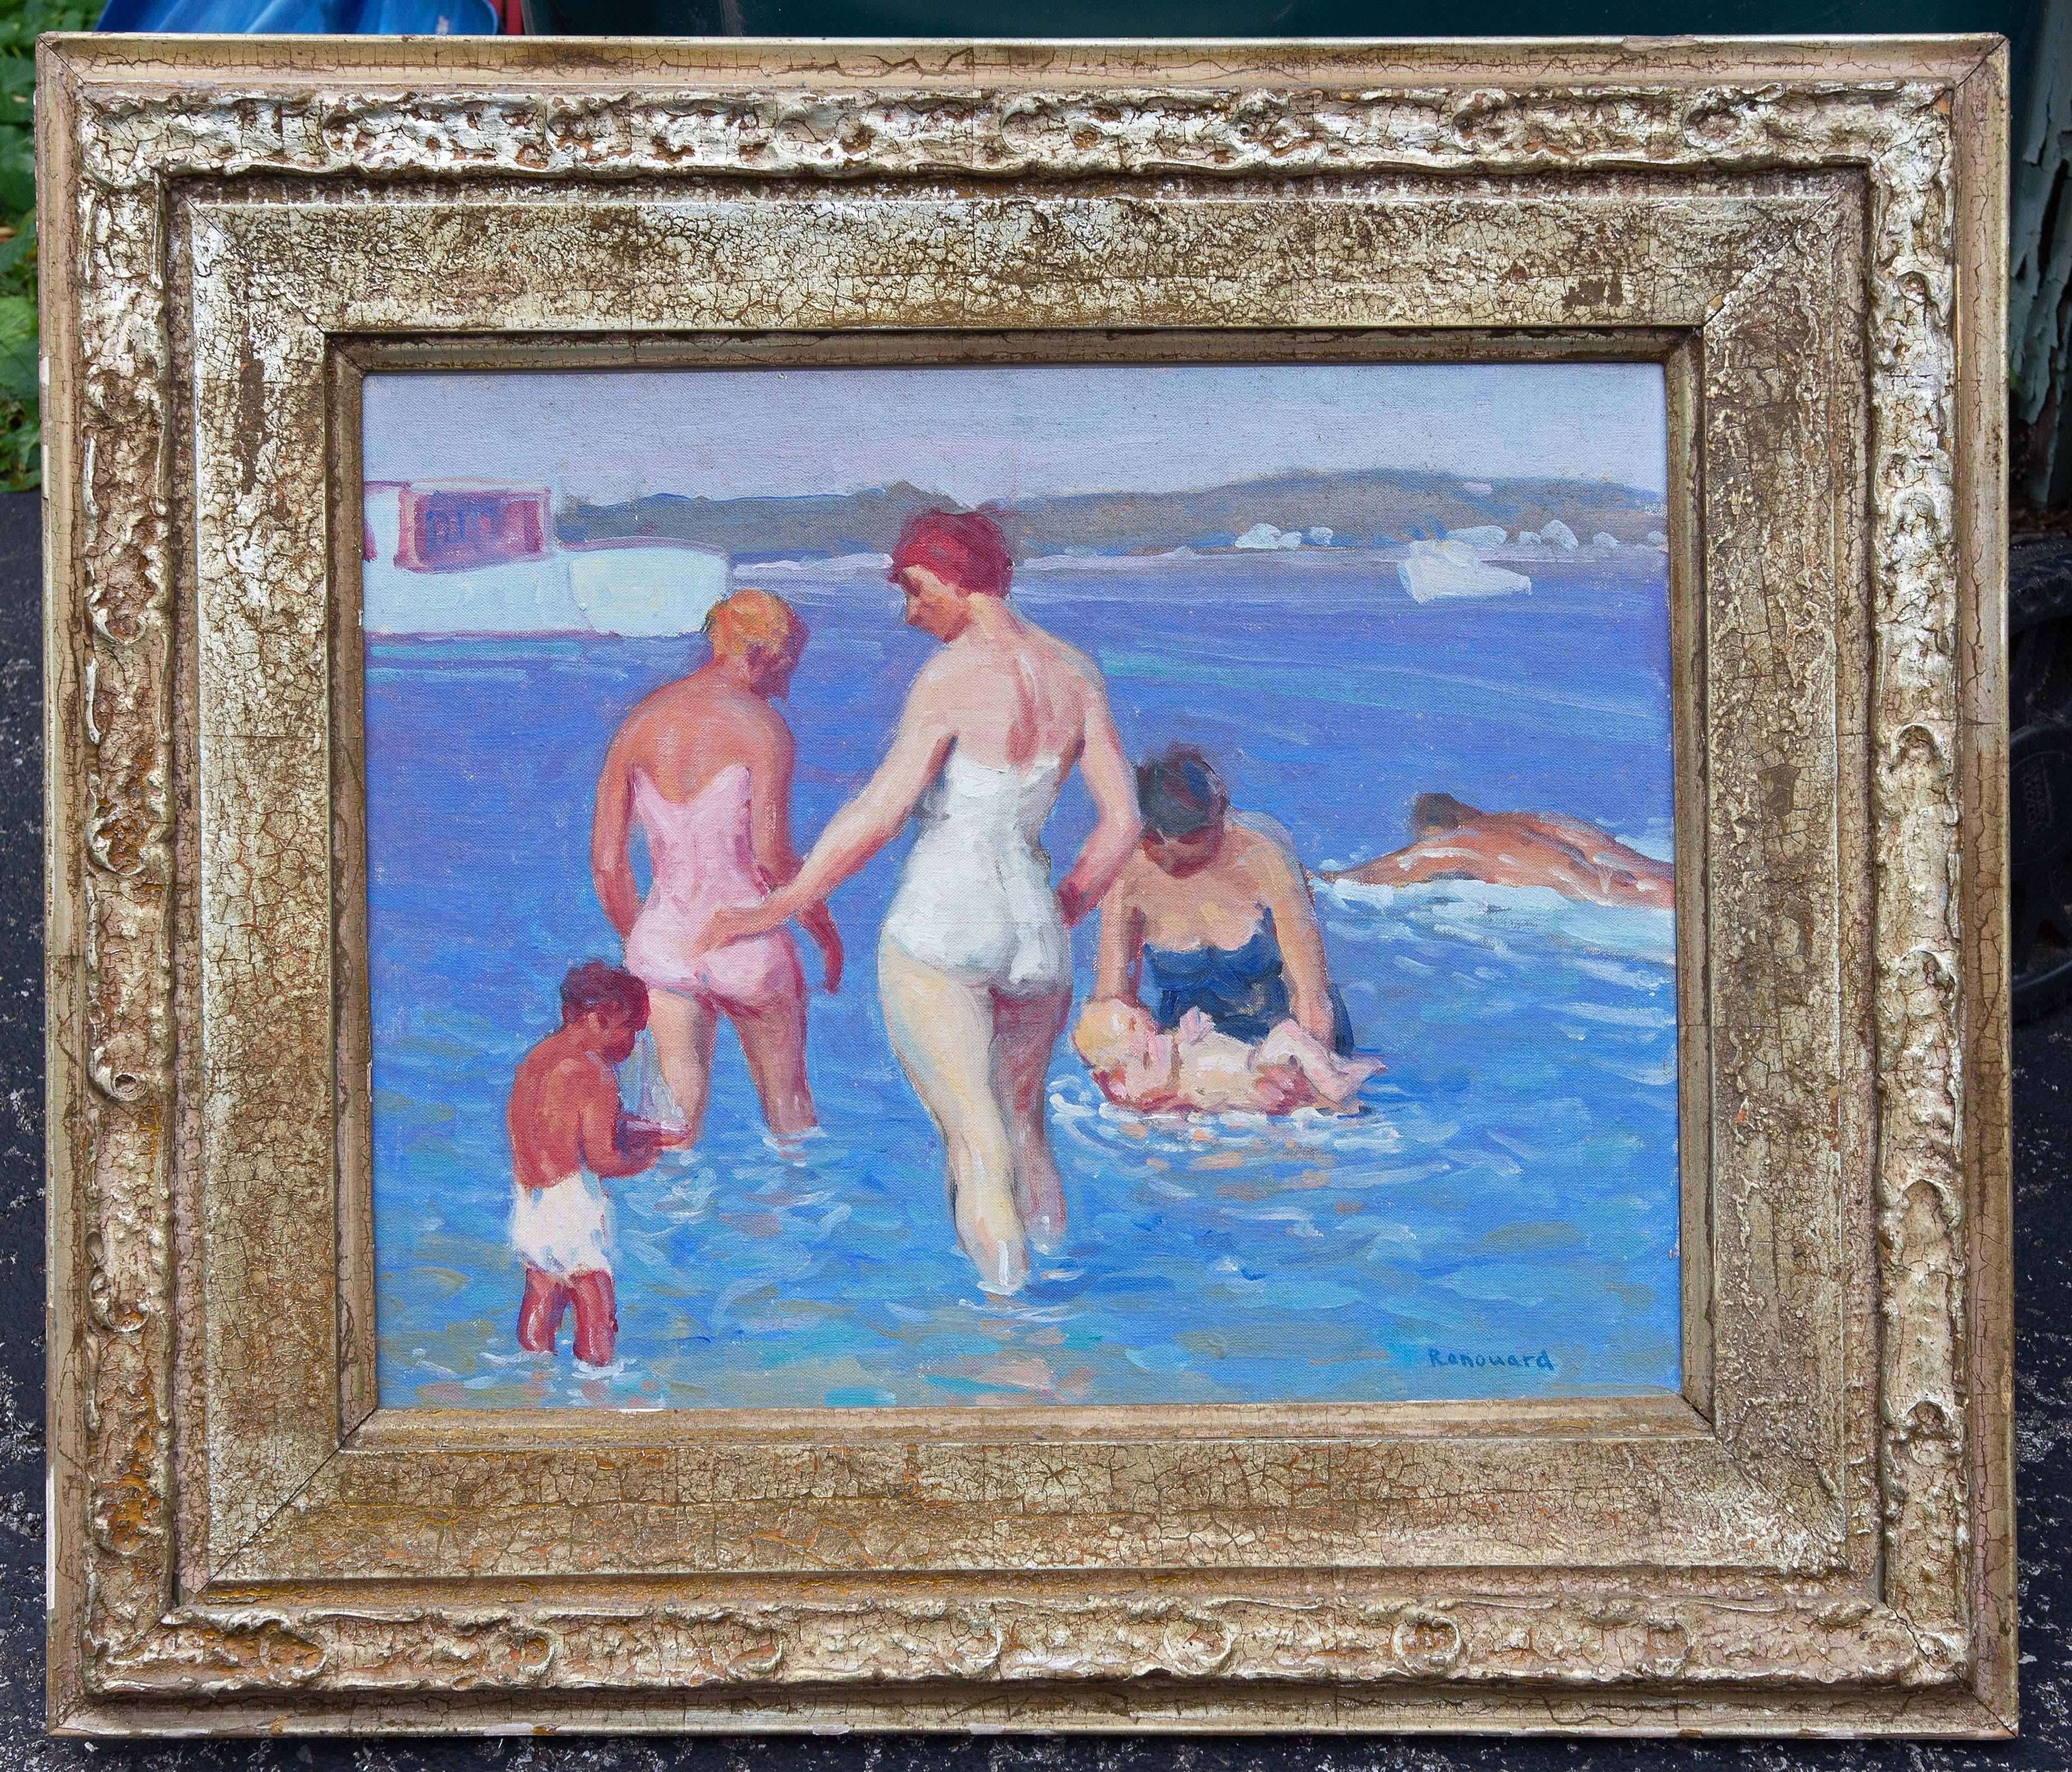 Amerikanische impressionistische Strandszene von George Renouard. Das Gemälde zeigt eine Familie von Badenden am Ufer. Die Figuren sind dreidimensional. Die Farben sind sowohl kräftig als auch sanft. Figurale Gemälde von Renouard sind selten. Dies